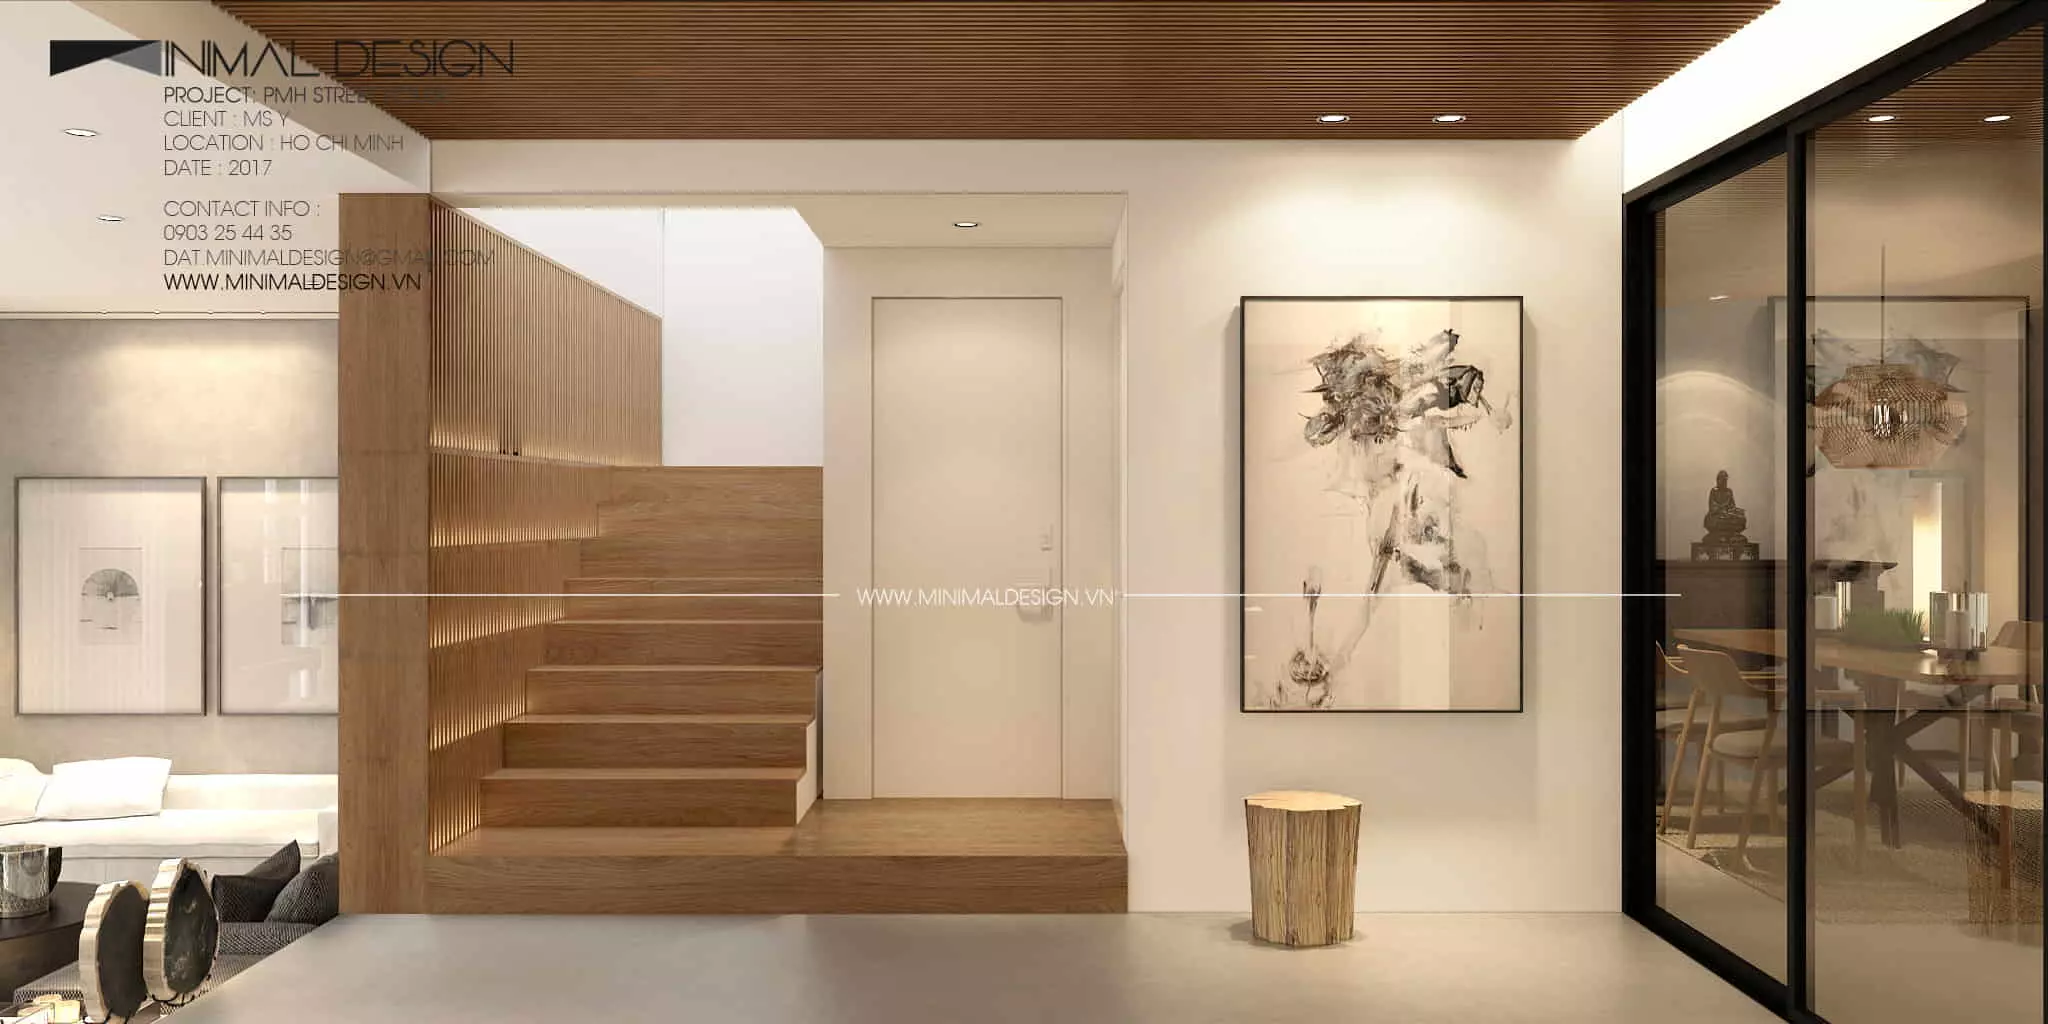 Thiết kế nội thất tối giản ghi dấu ấn trong cảm xúc con người nhờ vào nét độc đáo cùng nghệ thuật thị giác thể hiện ở từng không gian